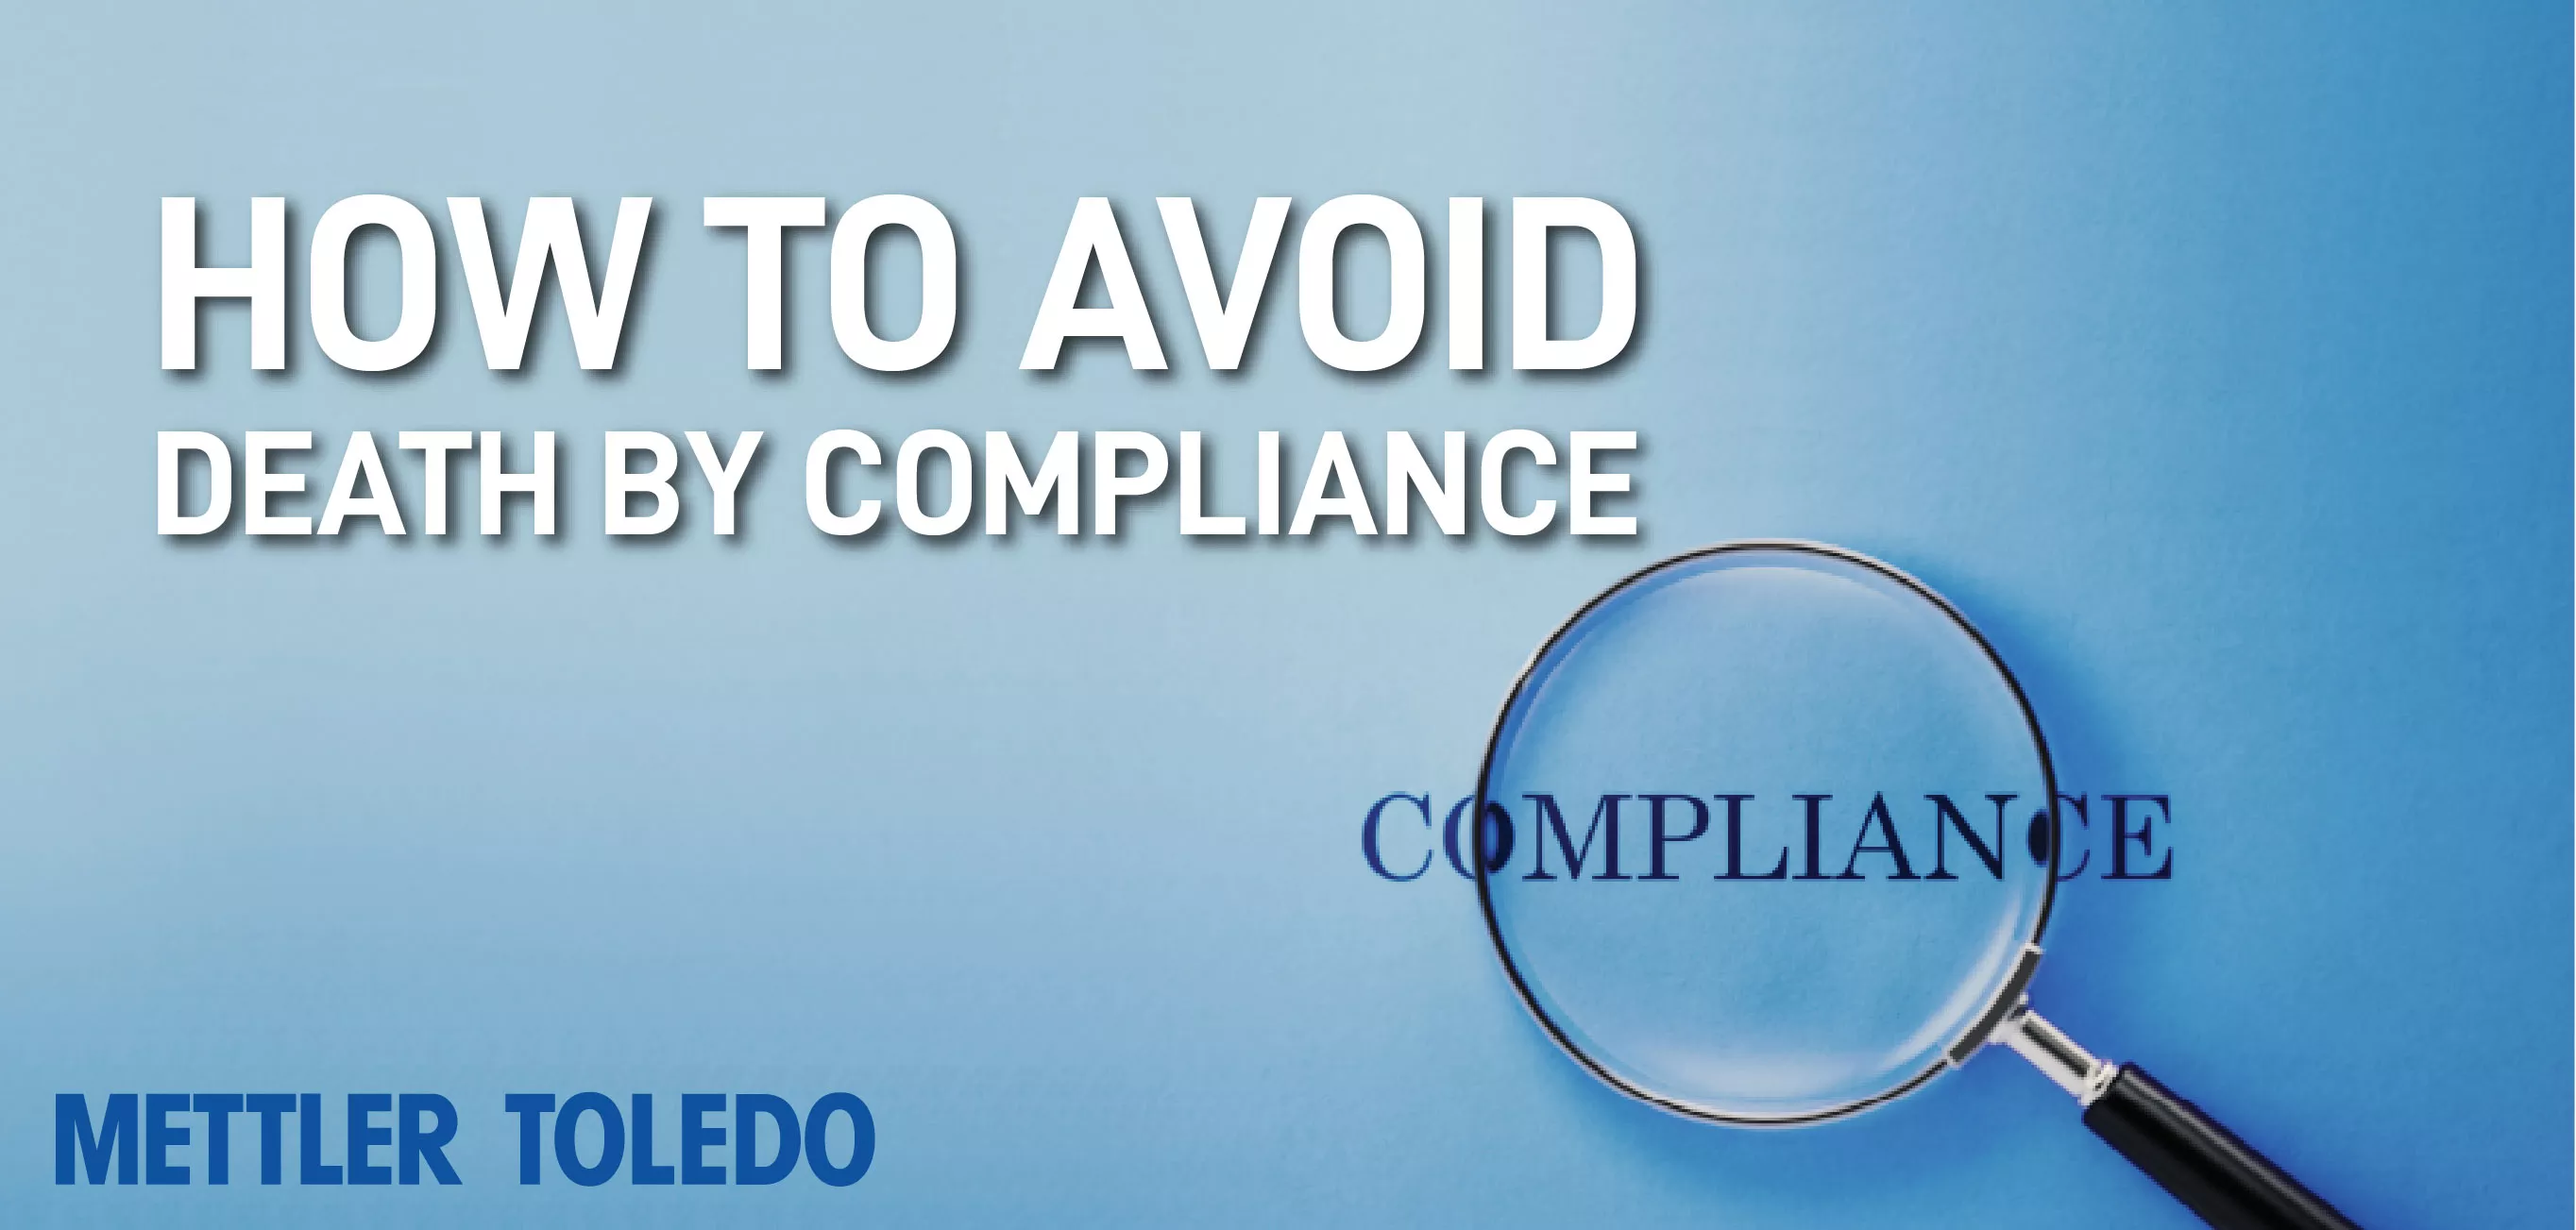 Avoid Death by Compliance by METTLER TOLEDO Webinar